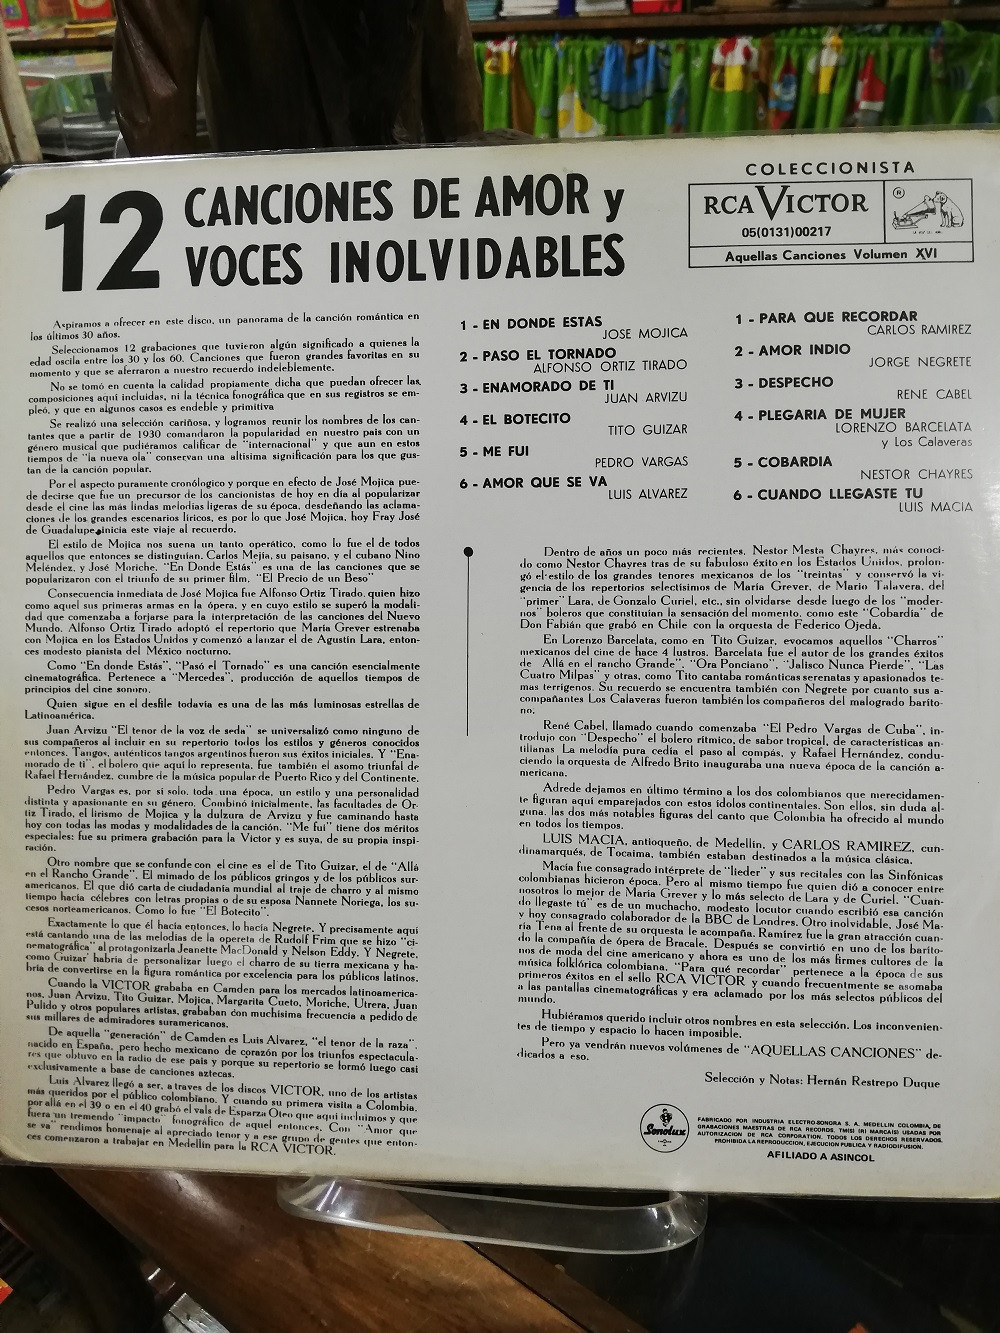 Imagen LP 12 CANCIONES DE AMOR Y 12 VOCES INOLVIDABLES - 12 CANCIONES DE AMOR Y 12 VOCES INOLVIDABLES VOL. 1 2